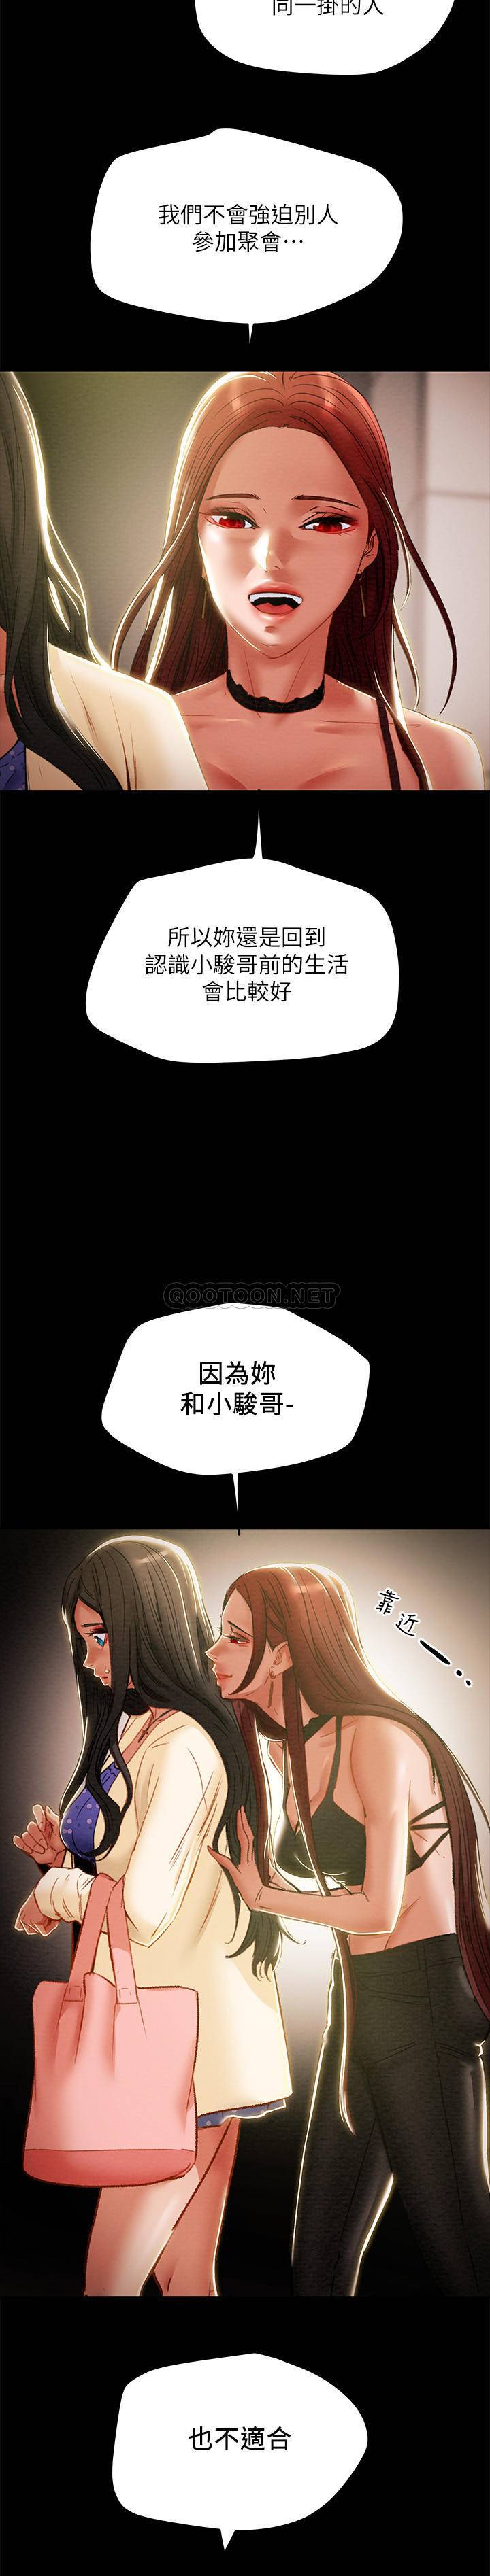 韩国污漫画 純情女攻略計劃 第36话-被嘲笑的郑多言 12